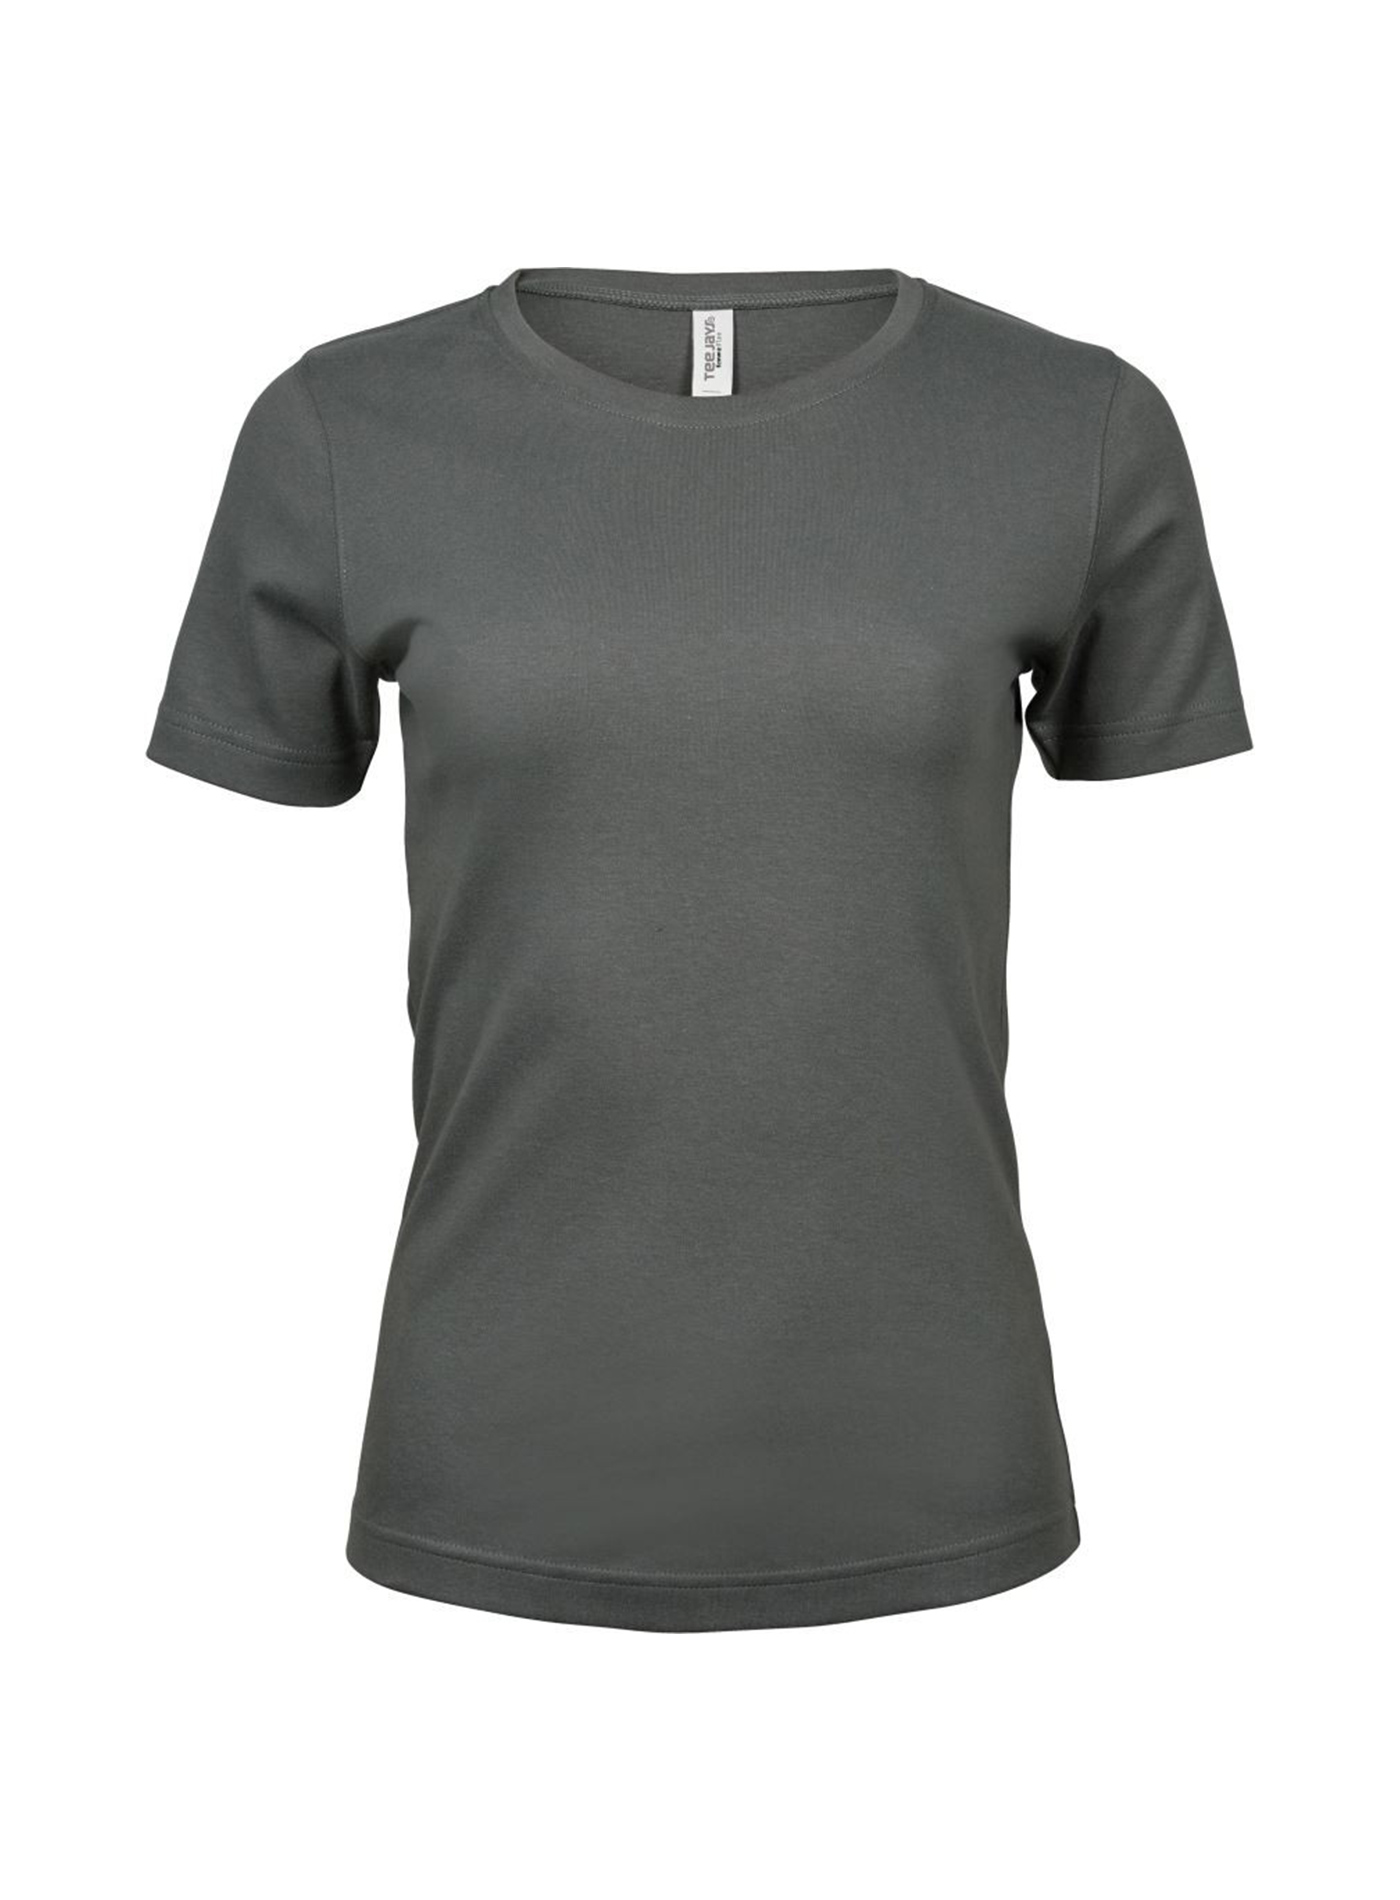 Silné bavlněné tričko Tee Jays Interlock - Sytě šedá M